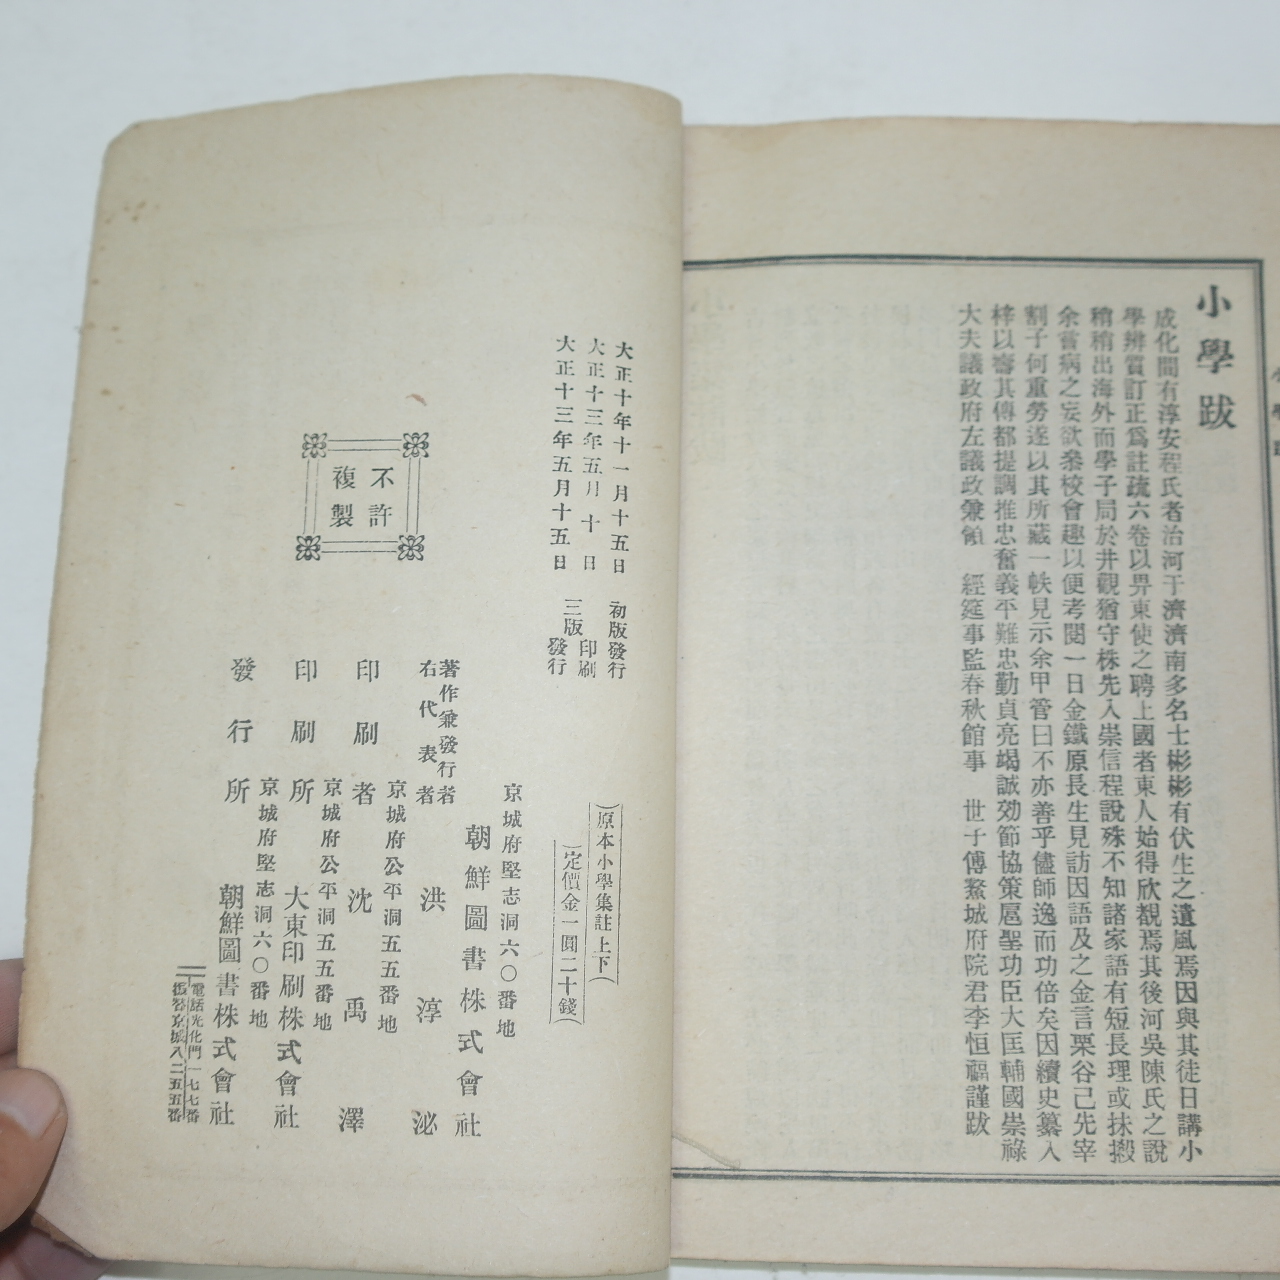 1924년 조선도서간행 원본소학집주(原本小學集註)하권 1책